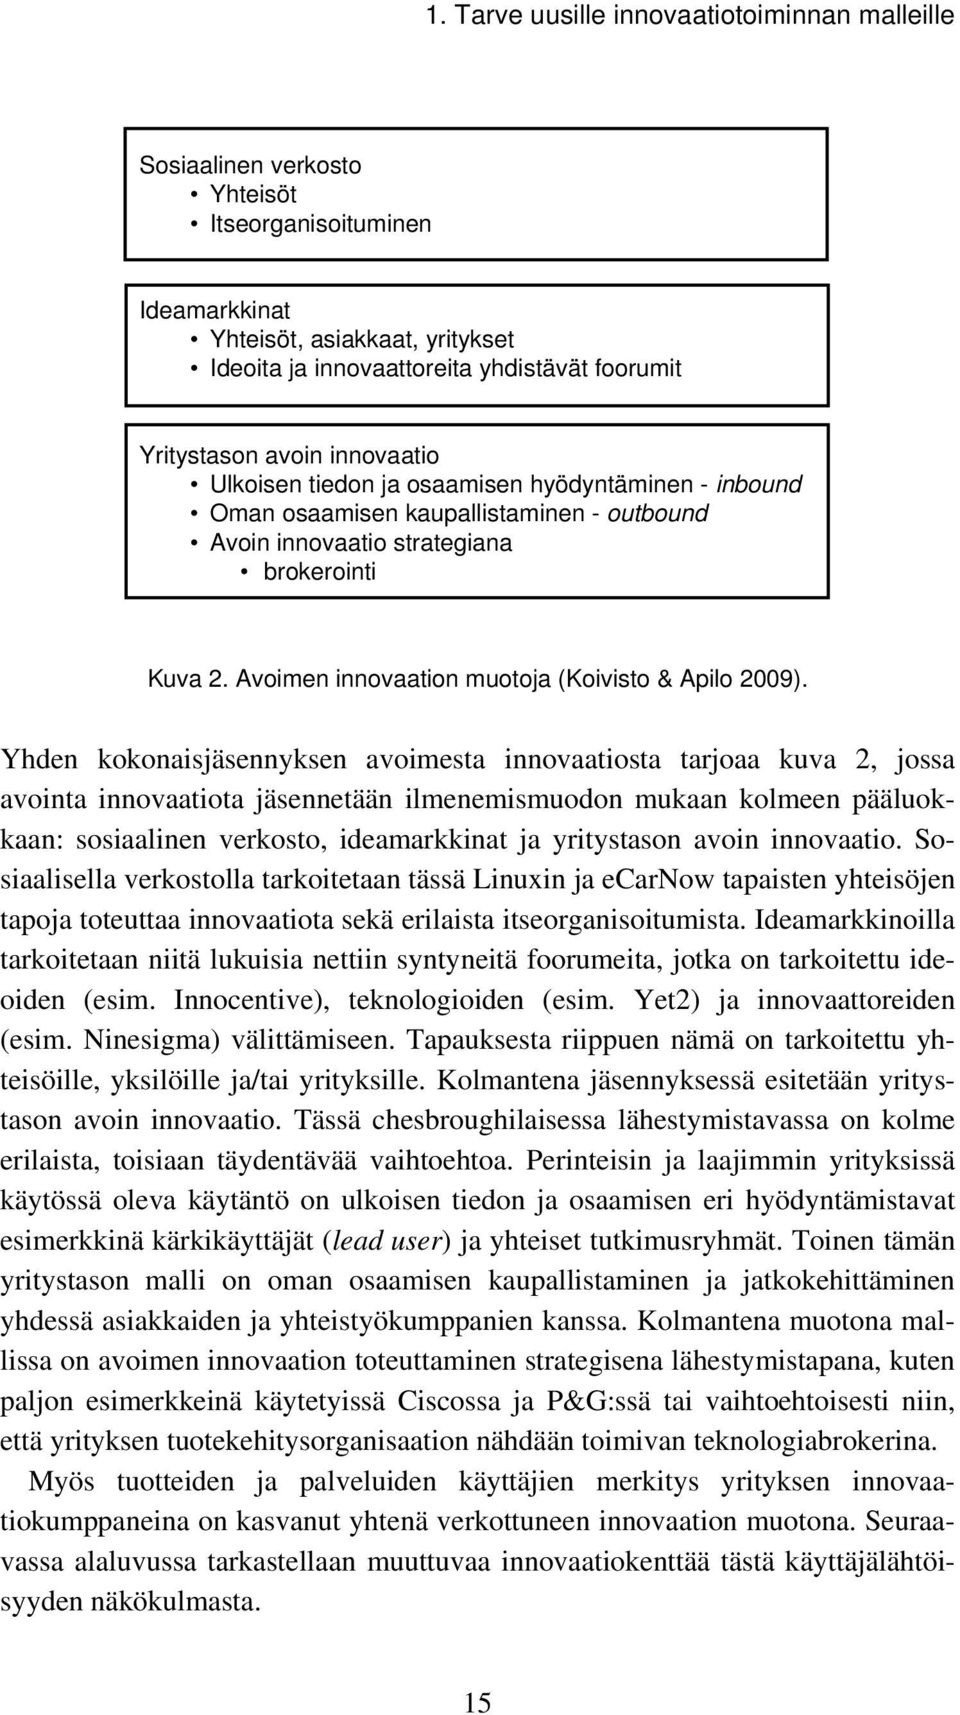 Avoimen innovaation muotoja (Koivisto & Apilo 2009).